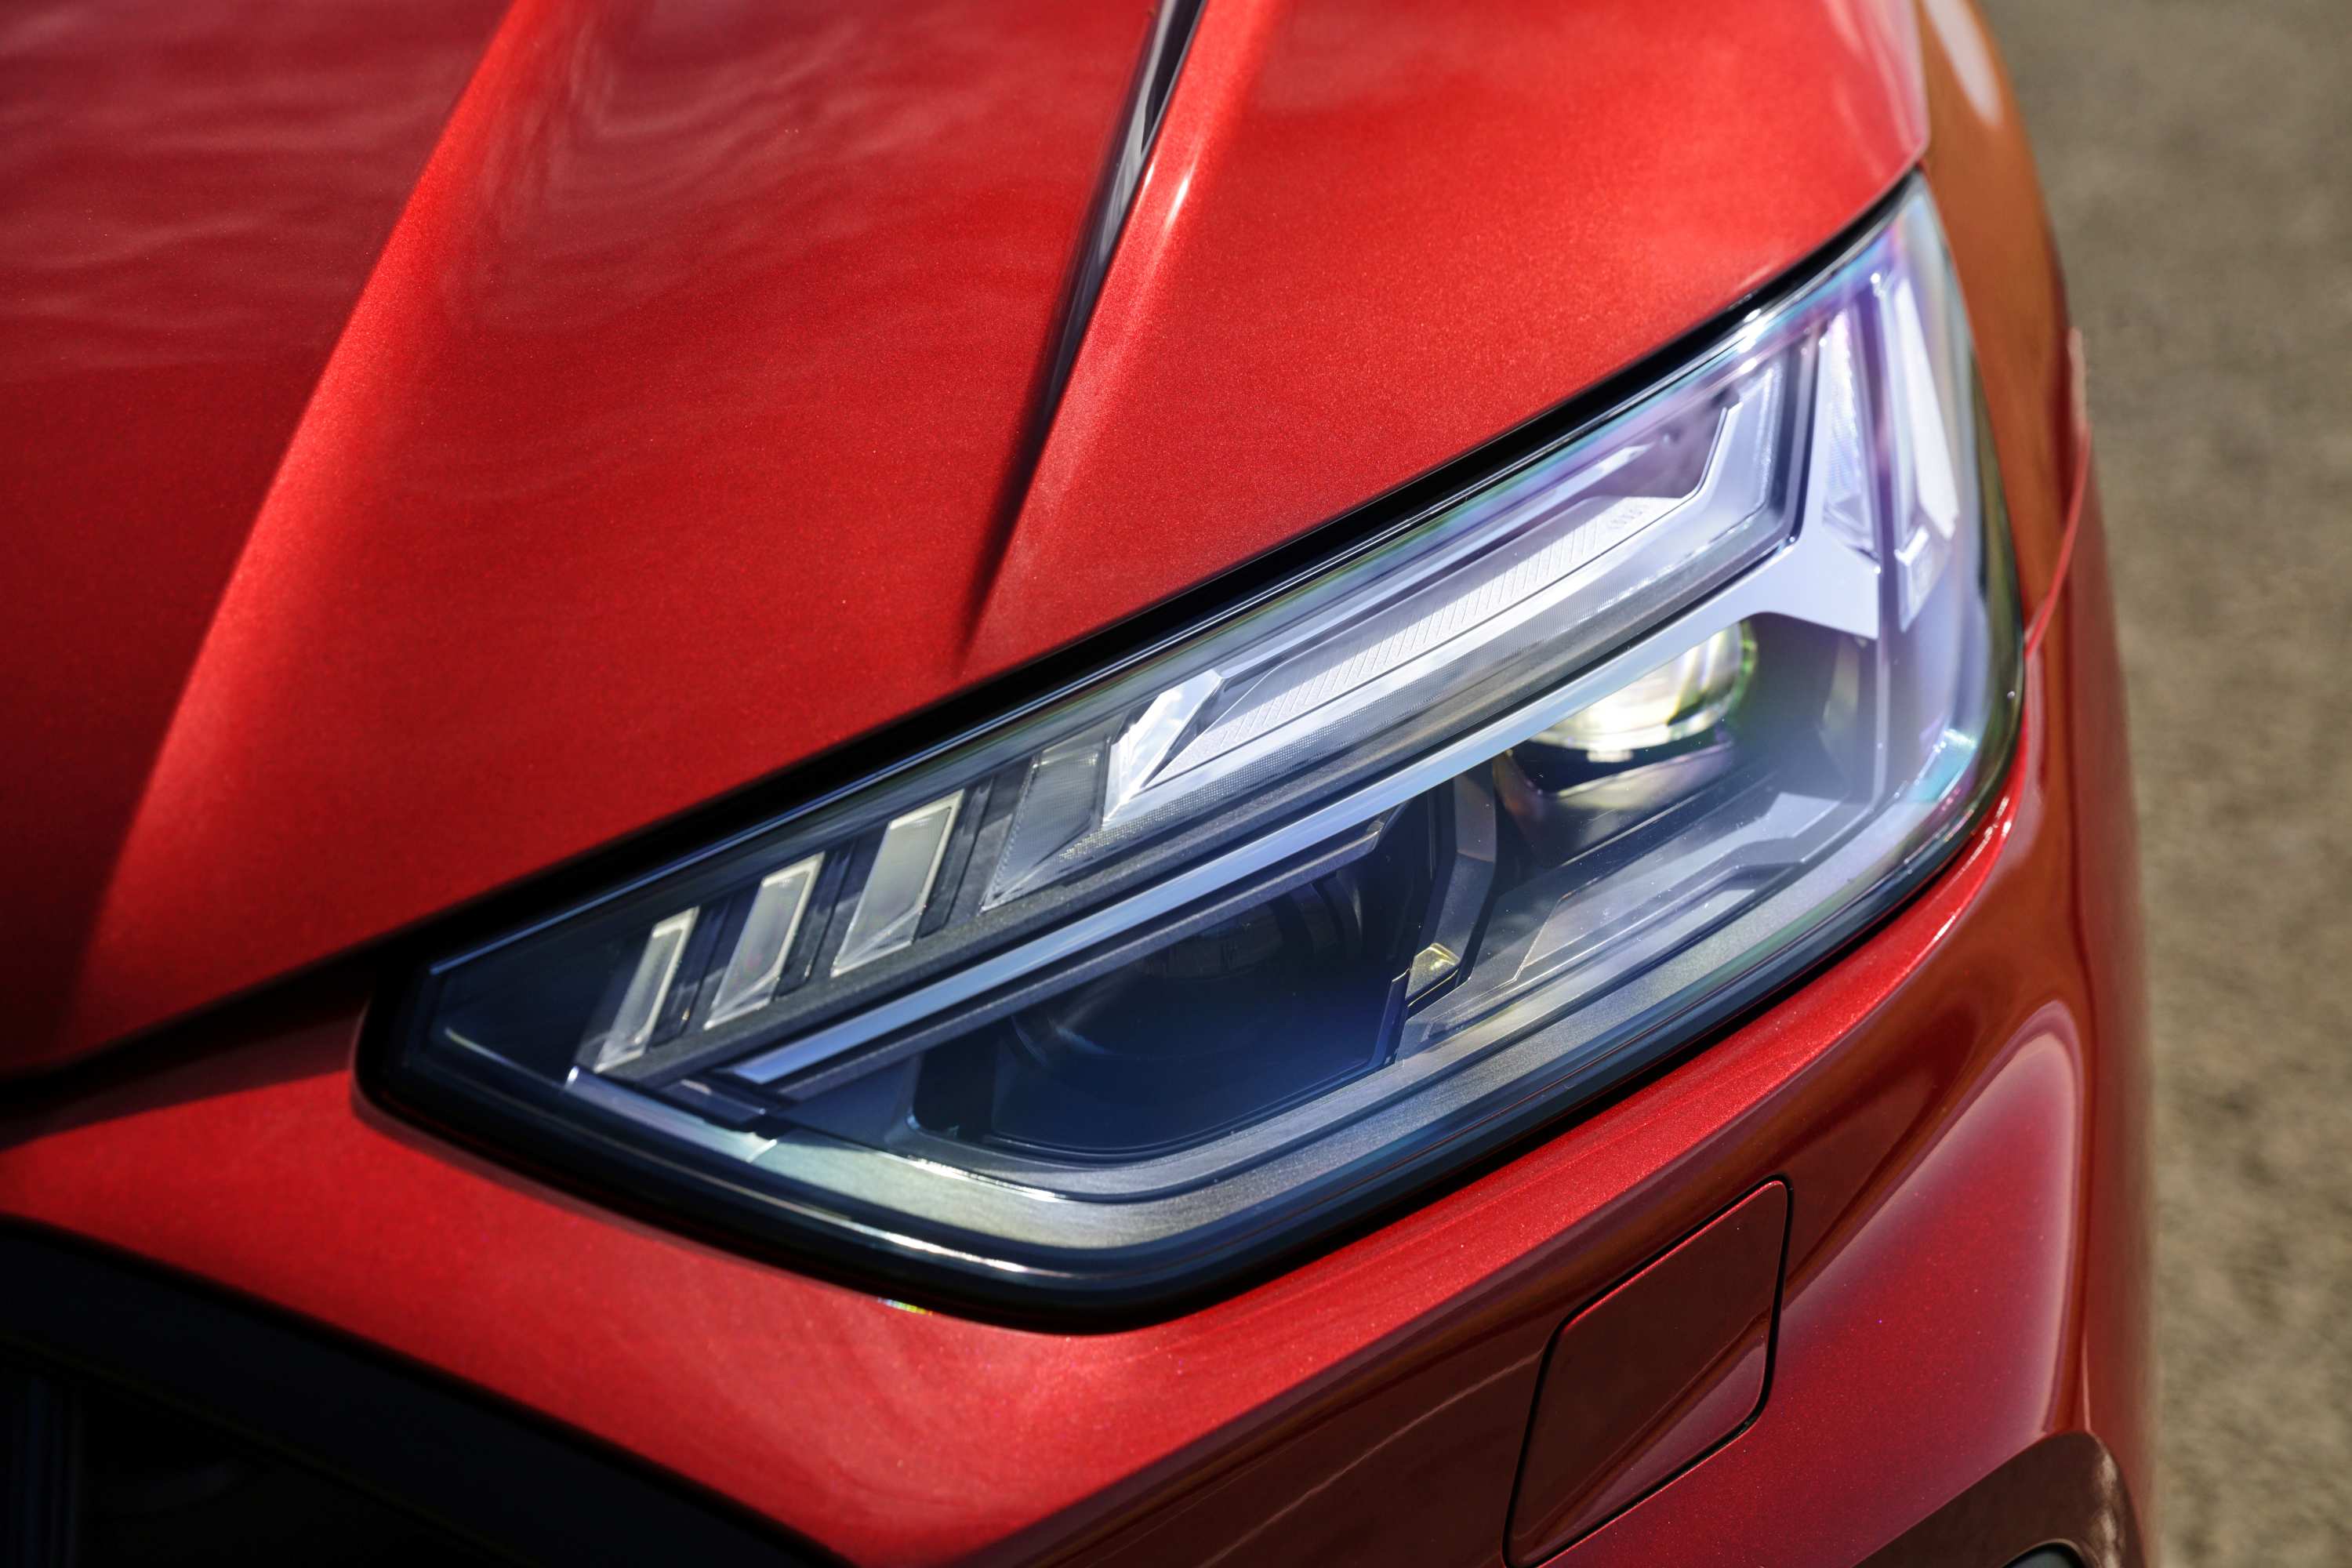 Audi Q5 2021 LED Headlights